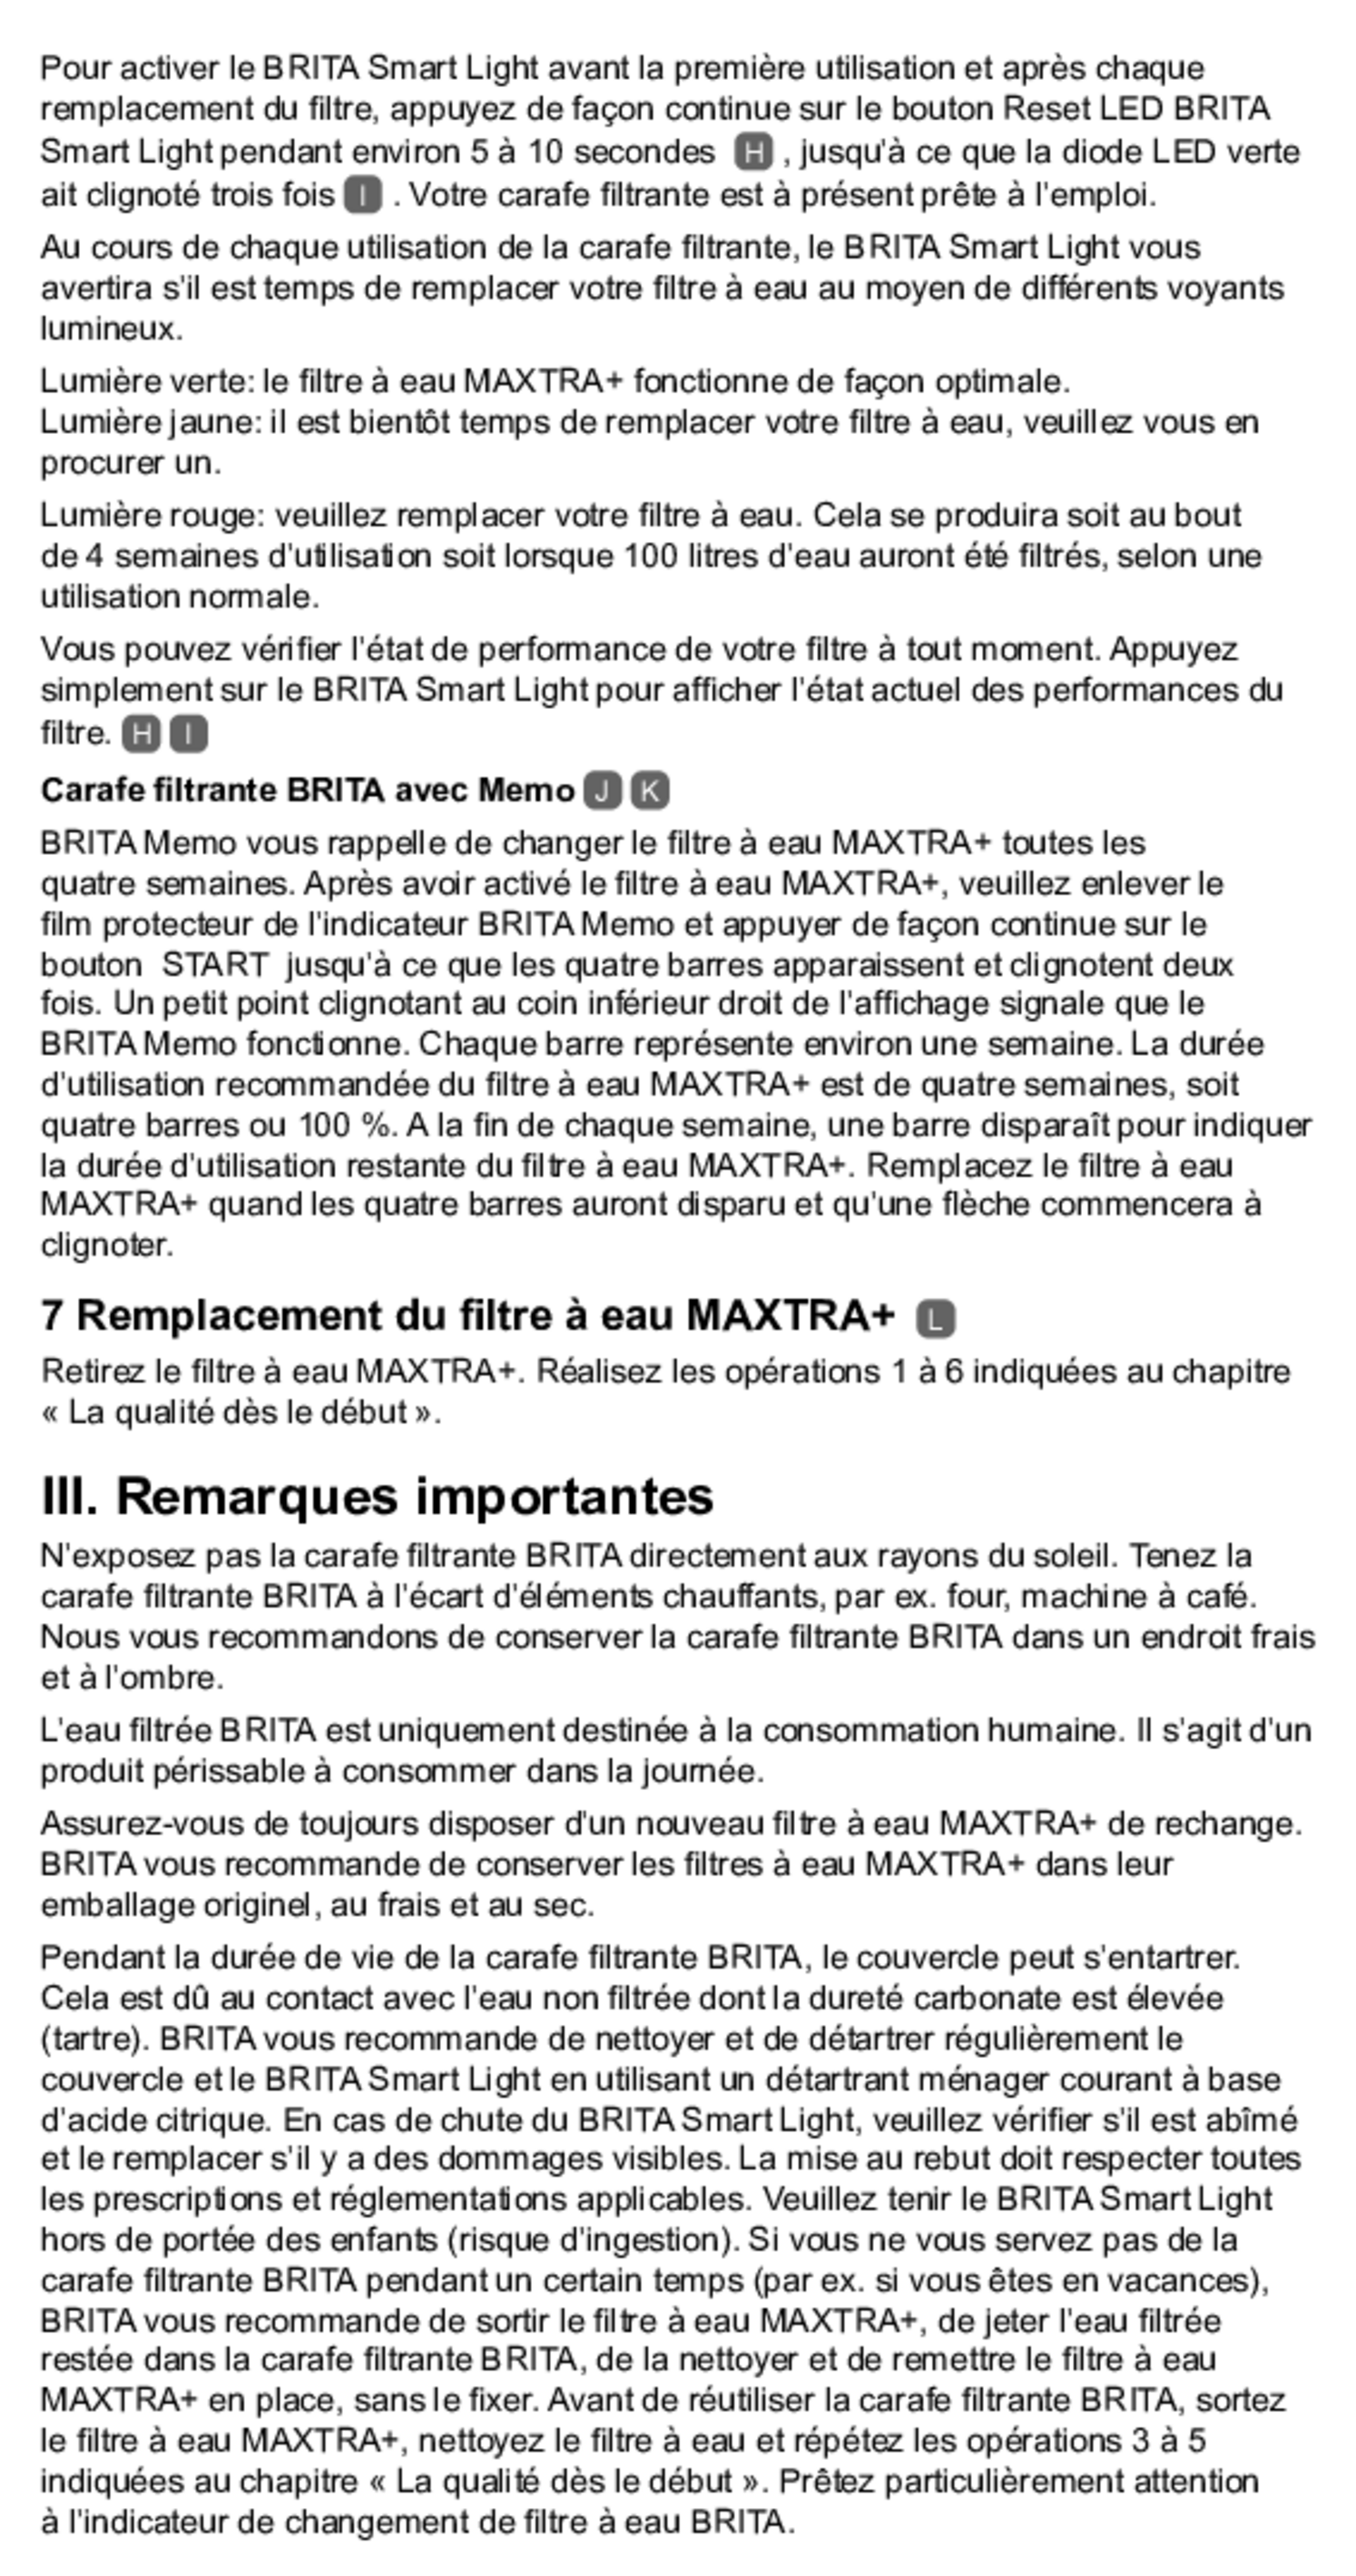 Marella Waterfilterkan Wit + 6 Maxtra Filterpatronen afbeelding van document #11, gebruiksaanwijzing